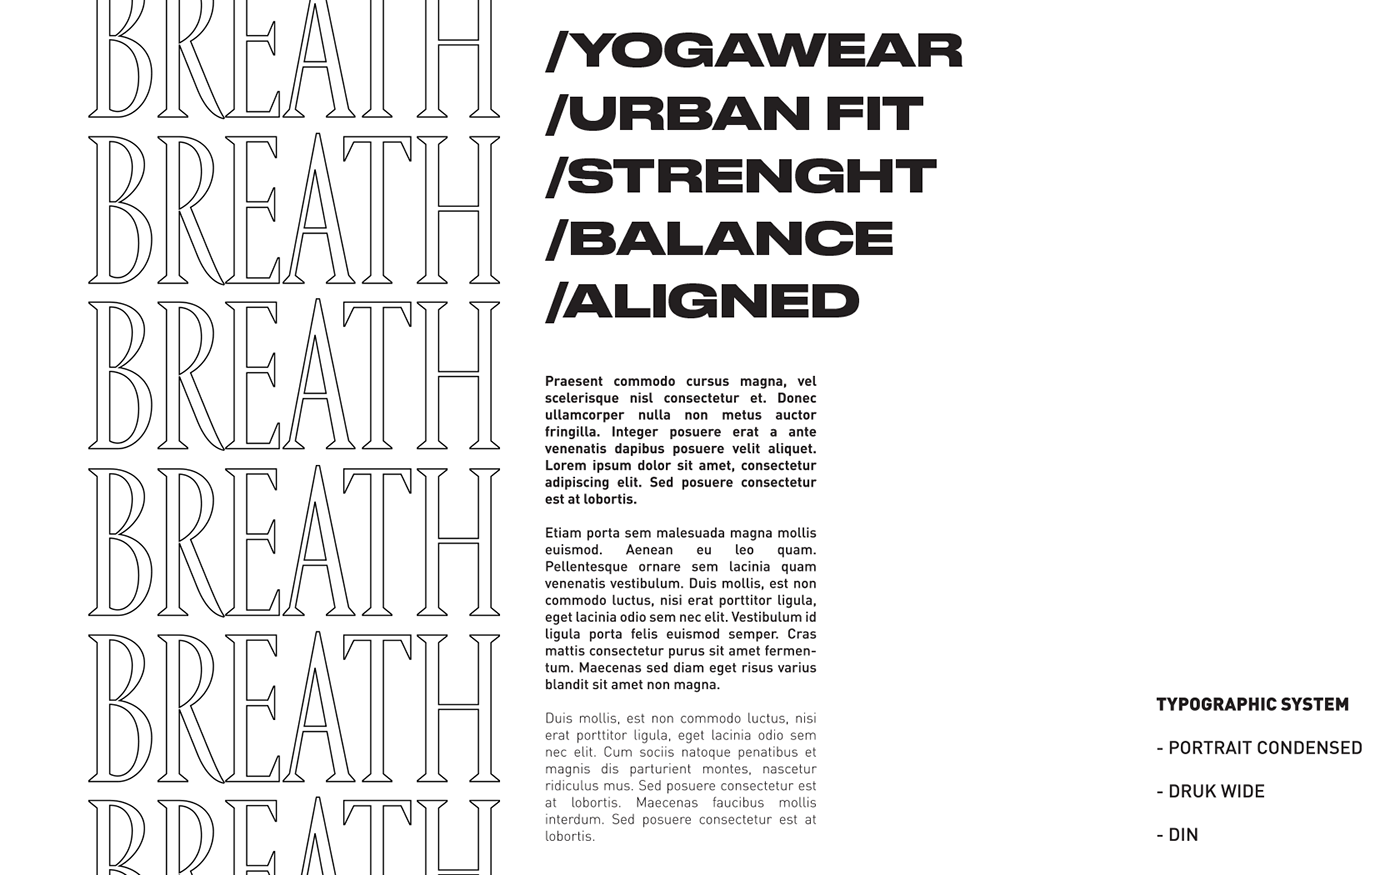 apparel branding  easyeasyeasy Fashion  graphic design  Yoga yogawear